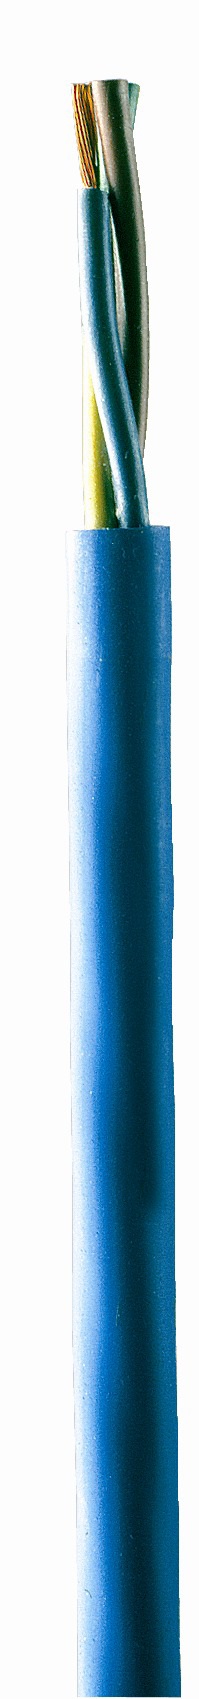 EBARA Unterwasserkabel für Brunnenpumpen 4 x 16mm²